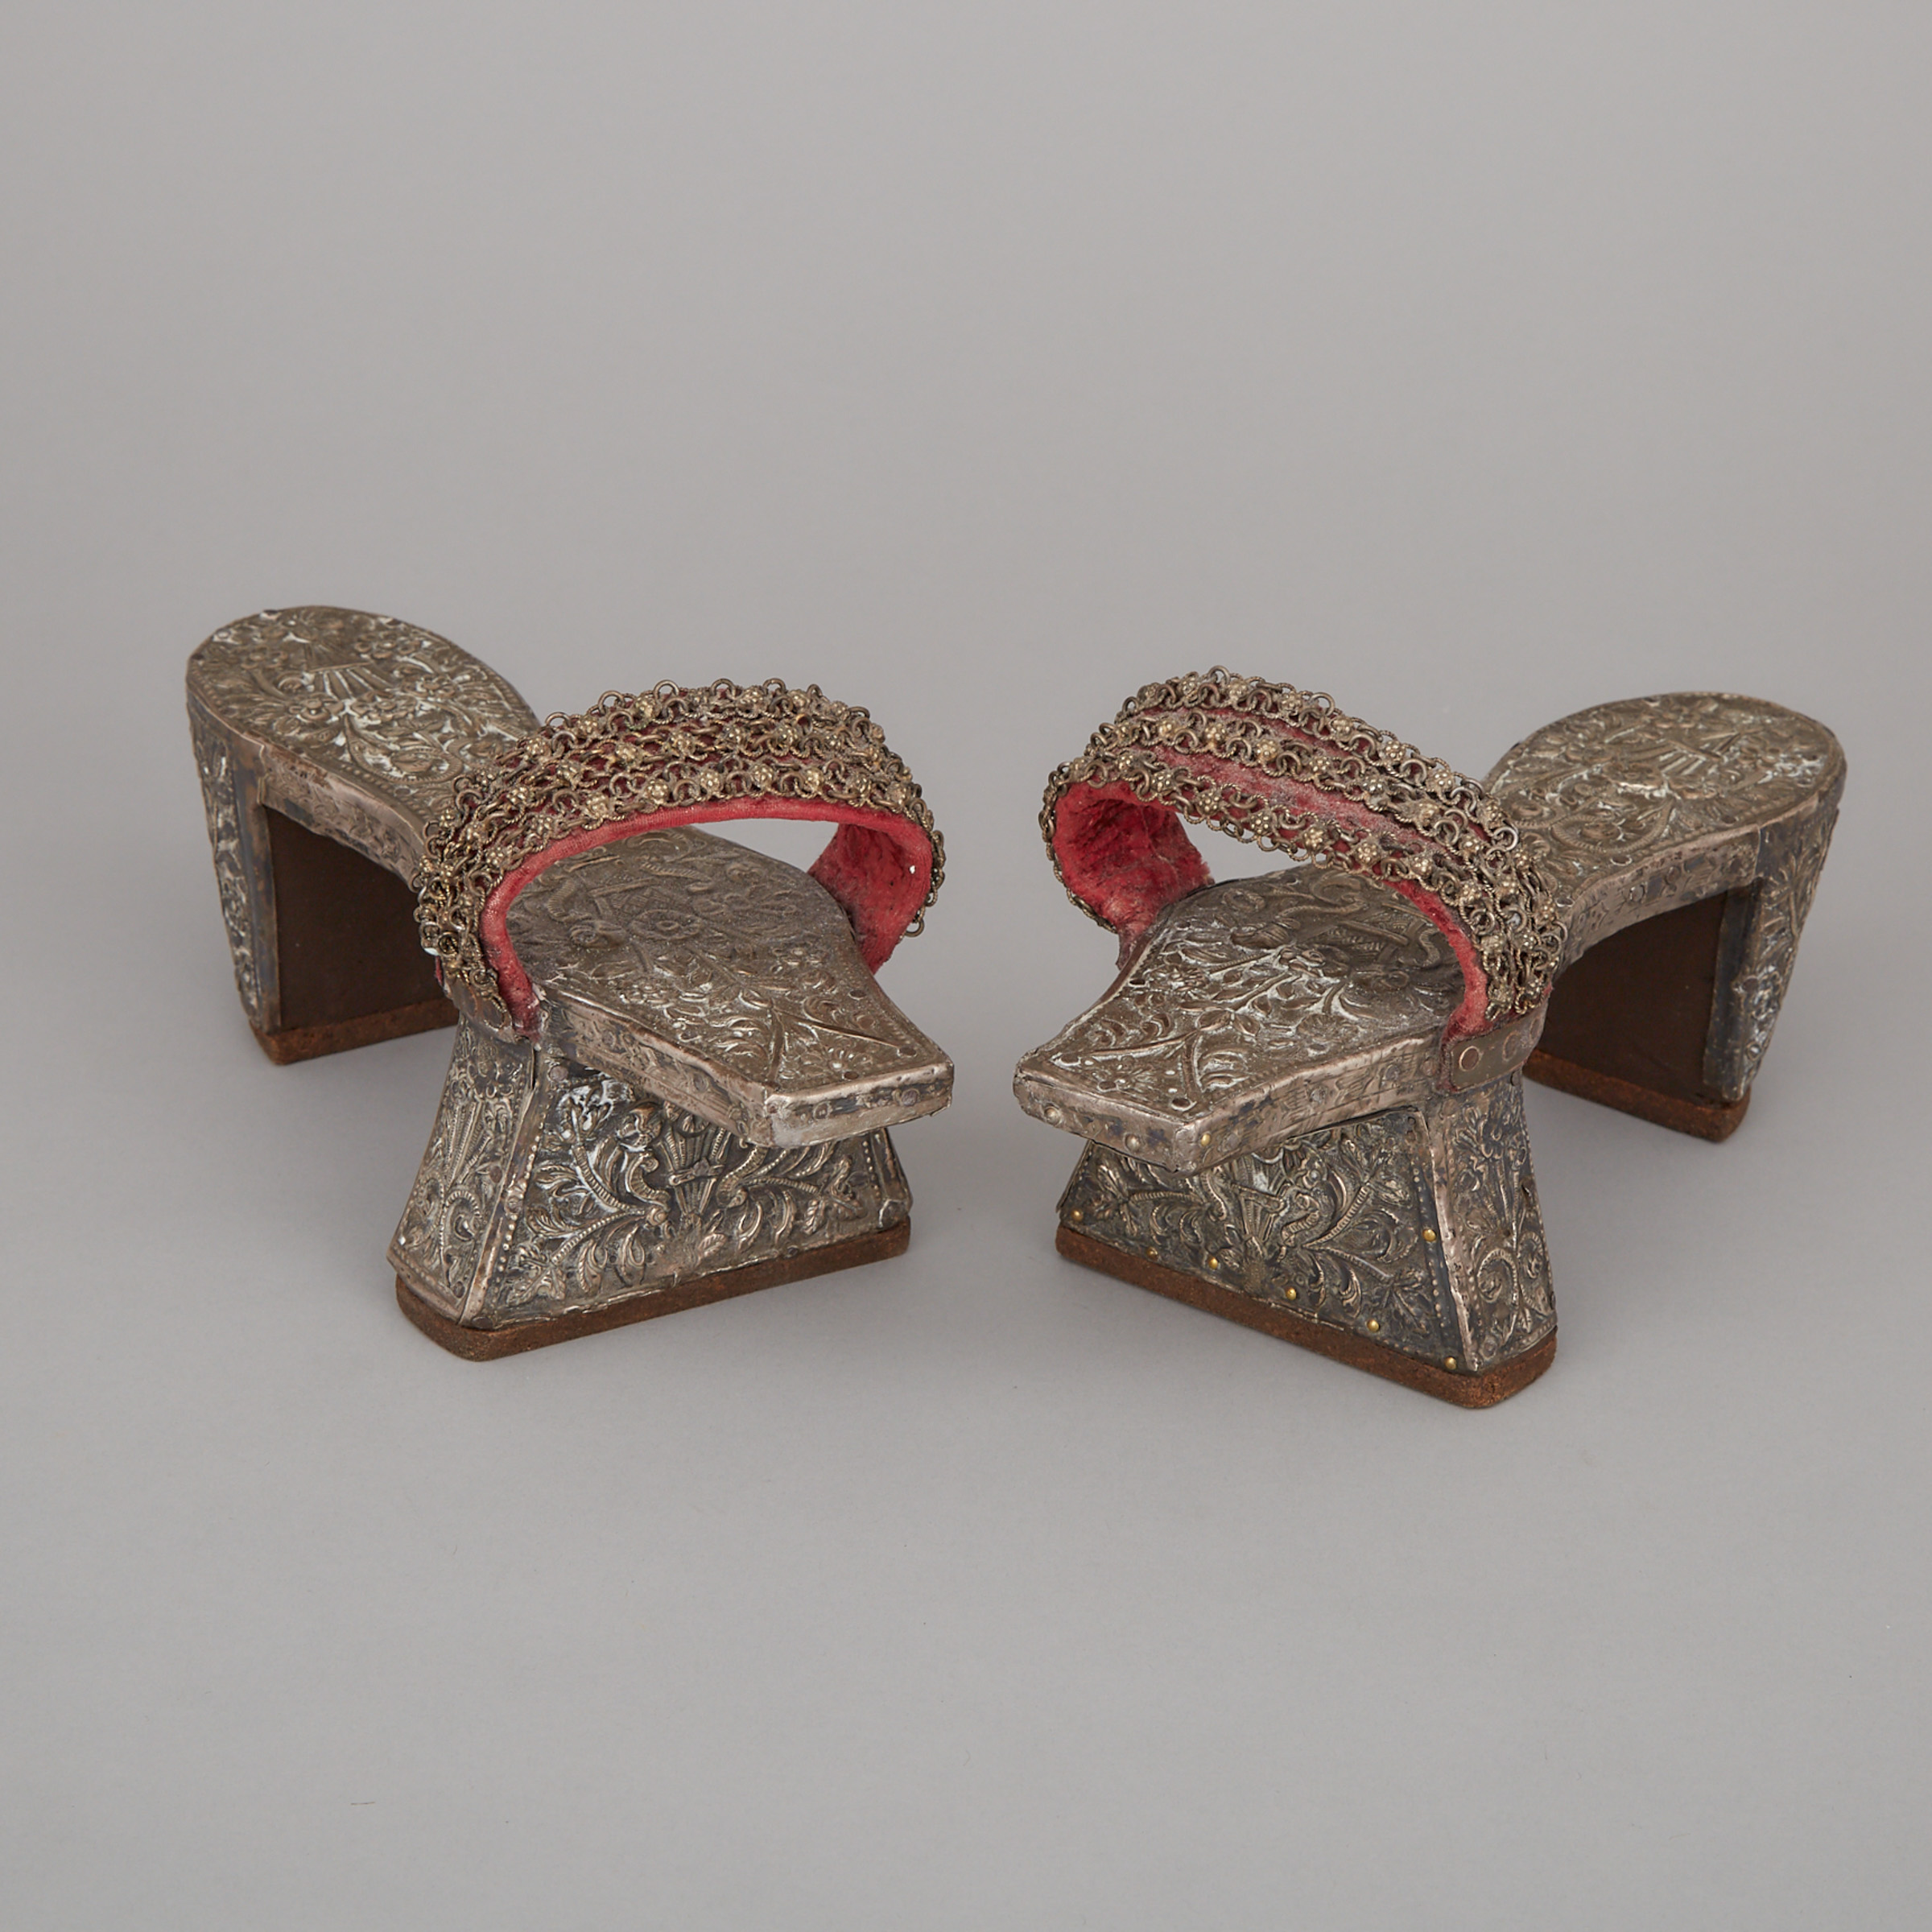 Pair of Japanese Geta Sandals, c.1900